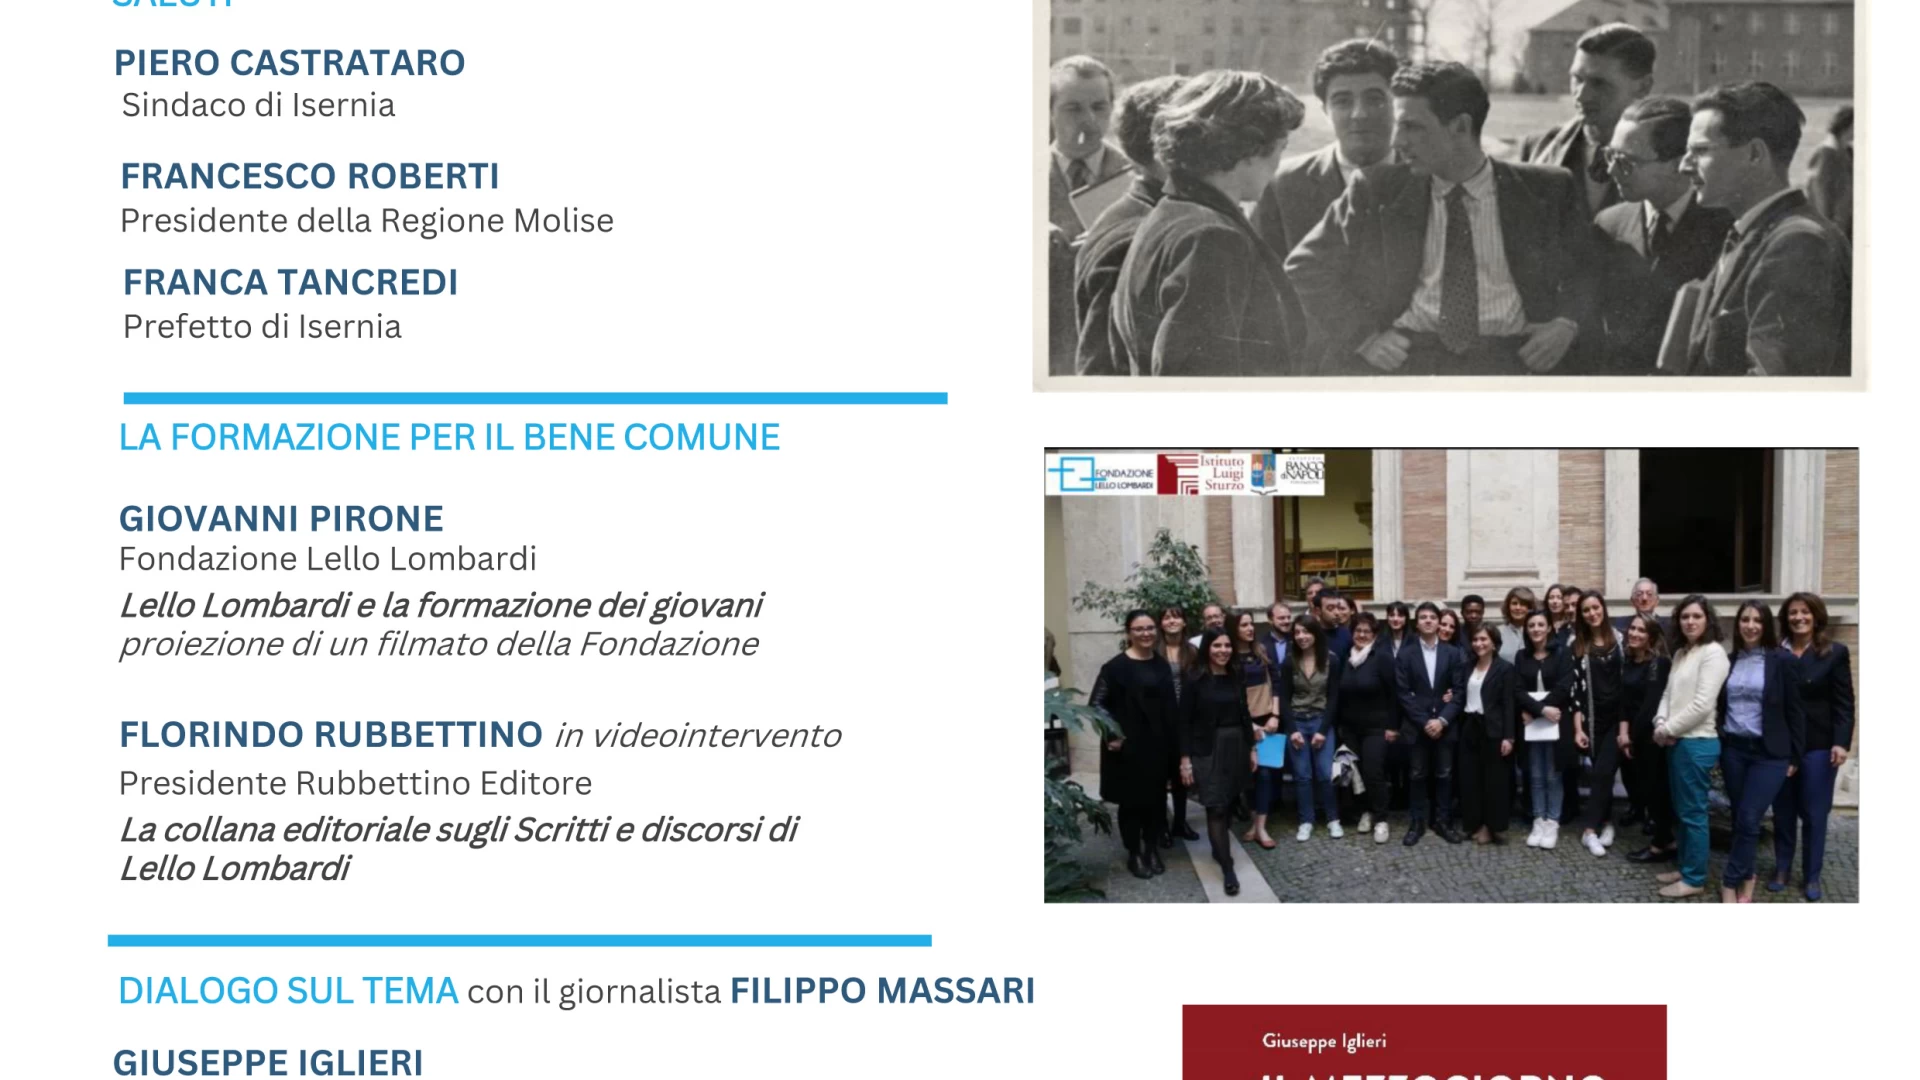 Isernia: all’Auditorium Unita’ d’Italia evento dedicato alla formazione dei giovani promosso dalla fondazione Lello Lombardi.